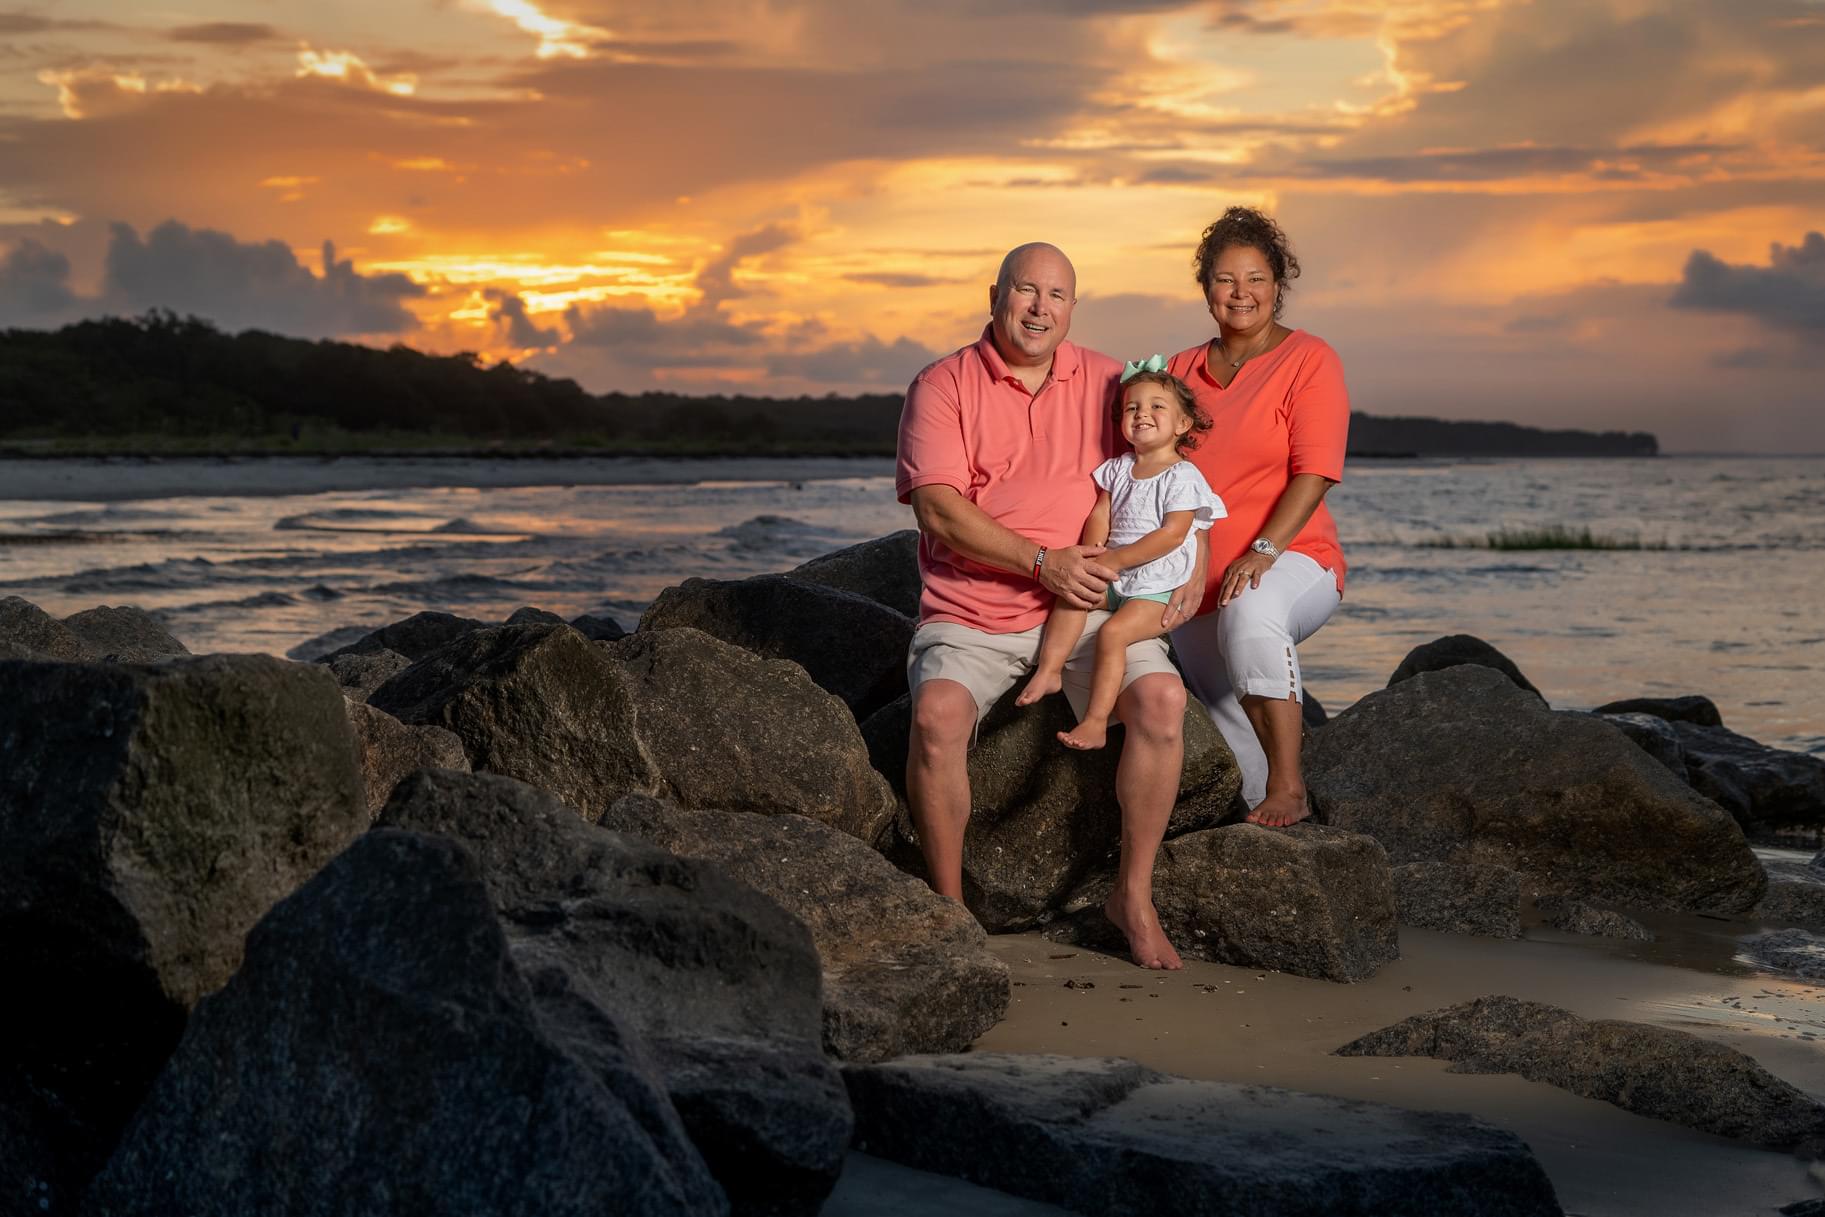 hilton head photographer, hilton head family beach portrait